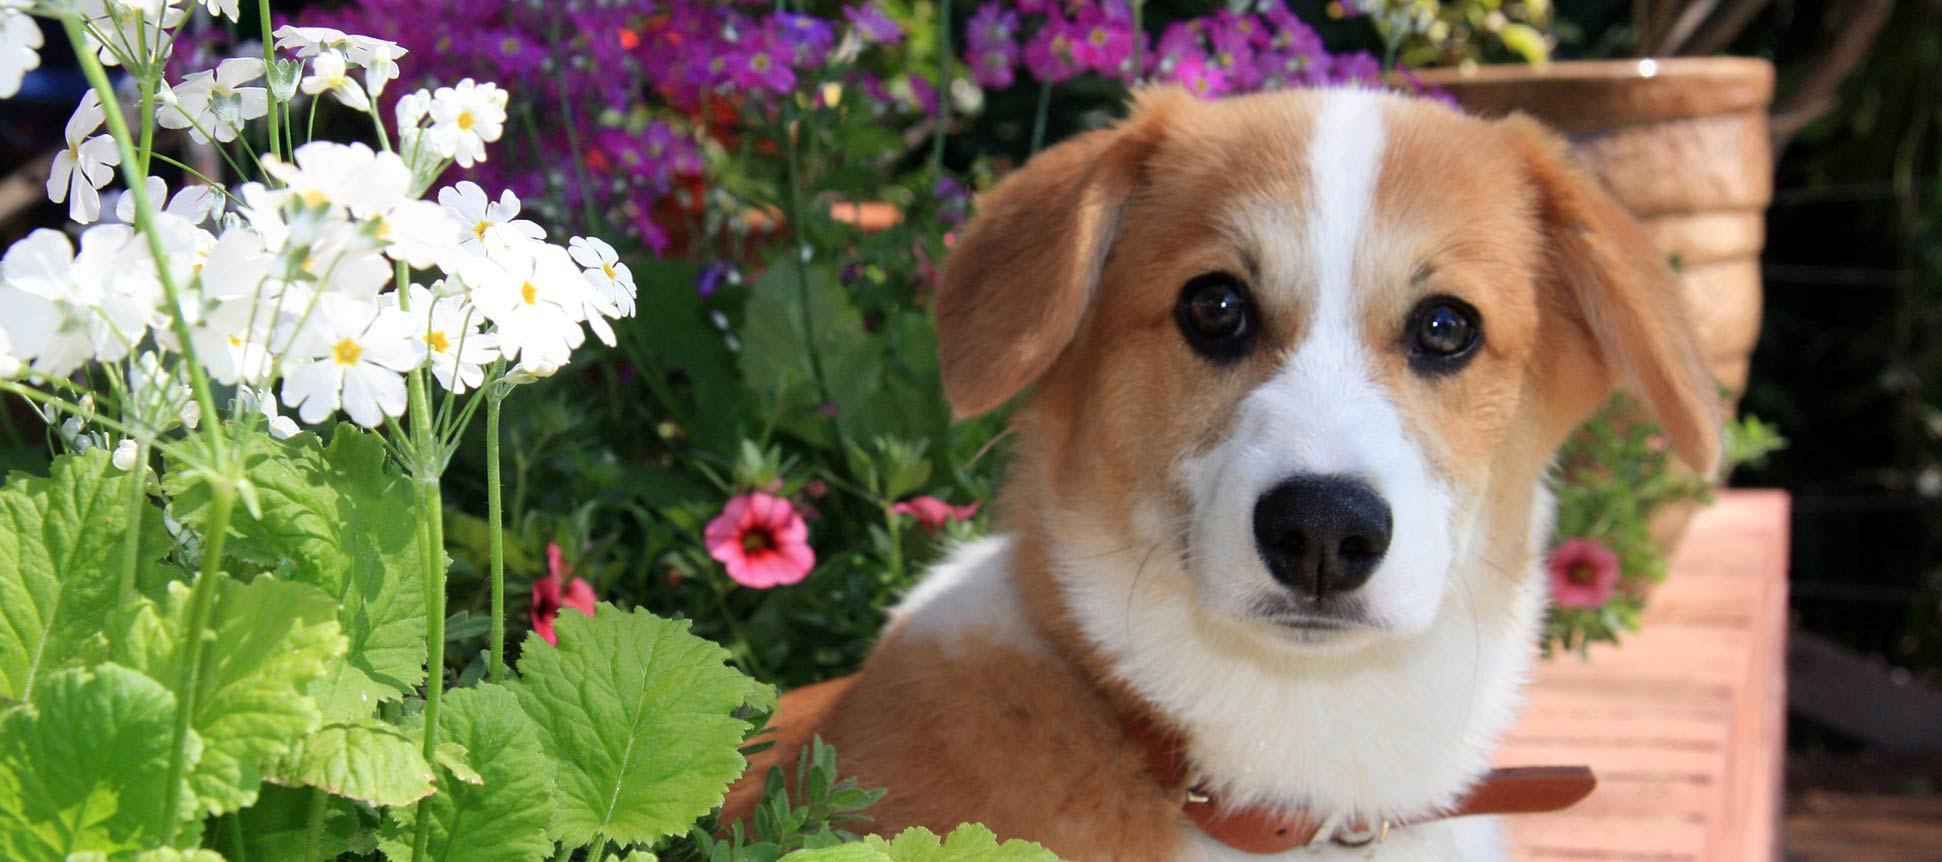 Plantas prohibidas en huertos urbanos con perros